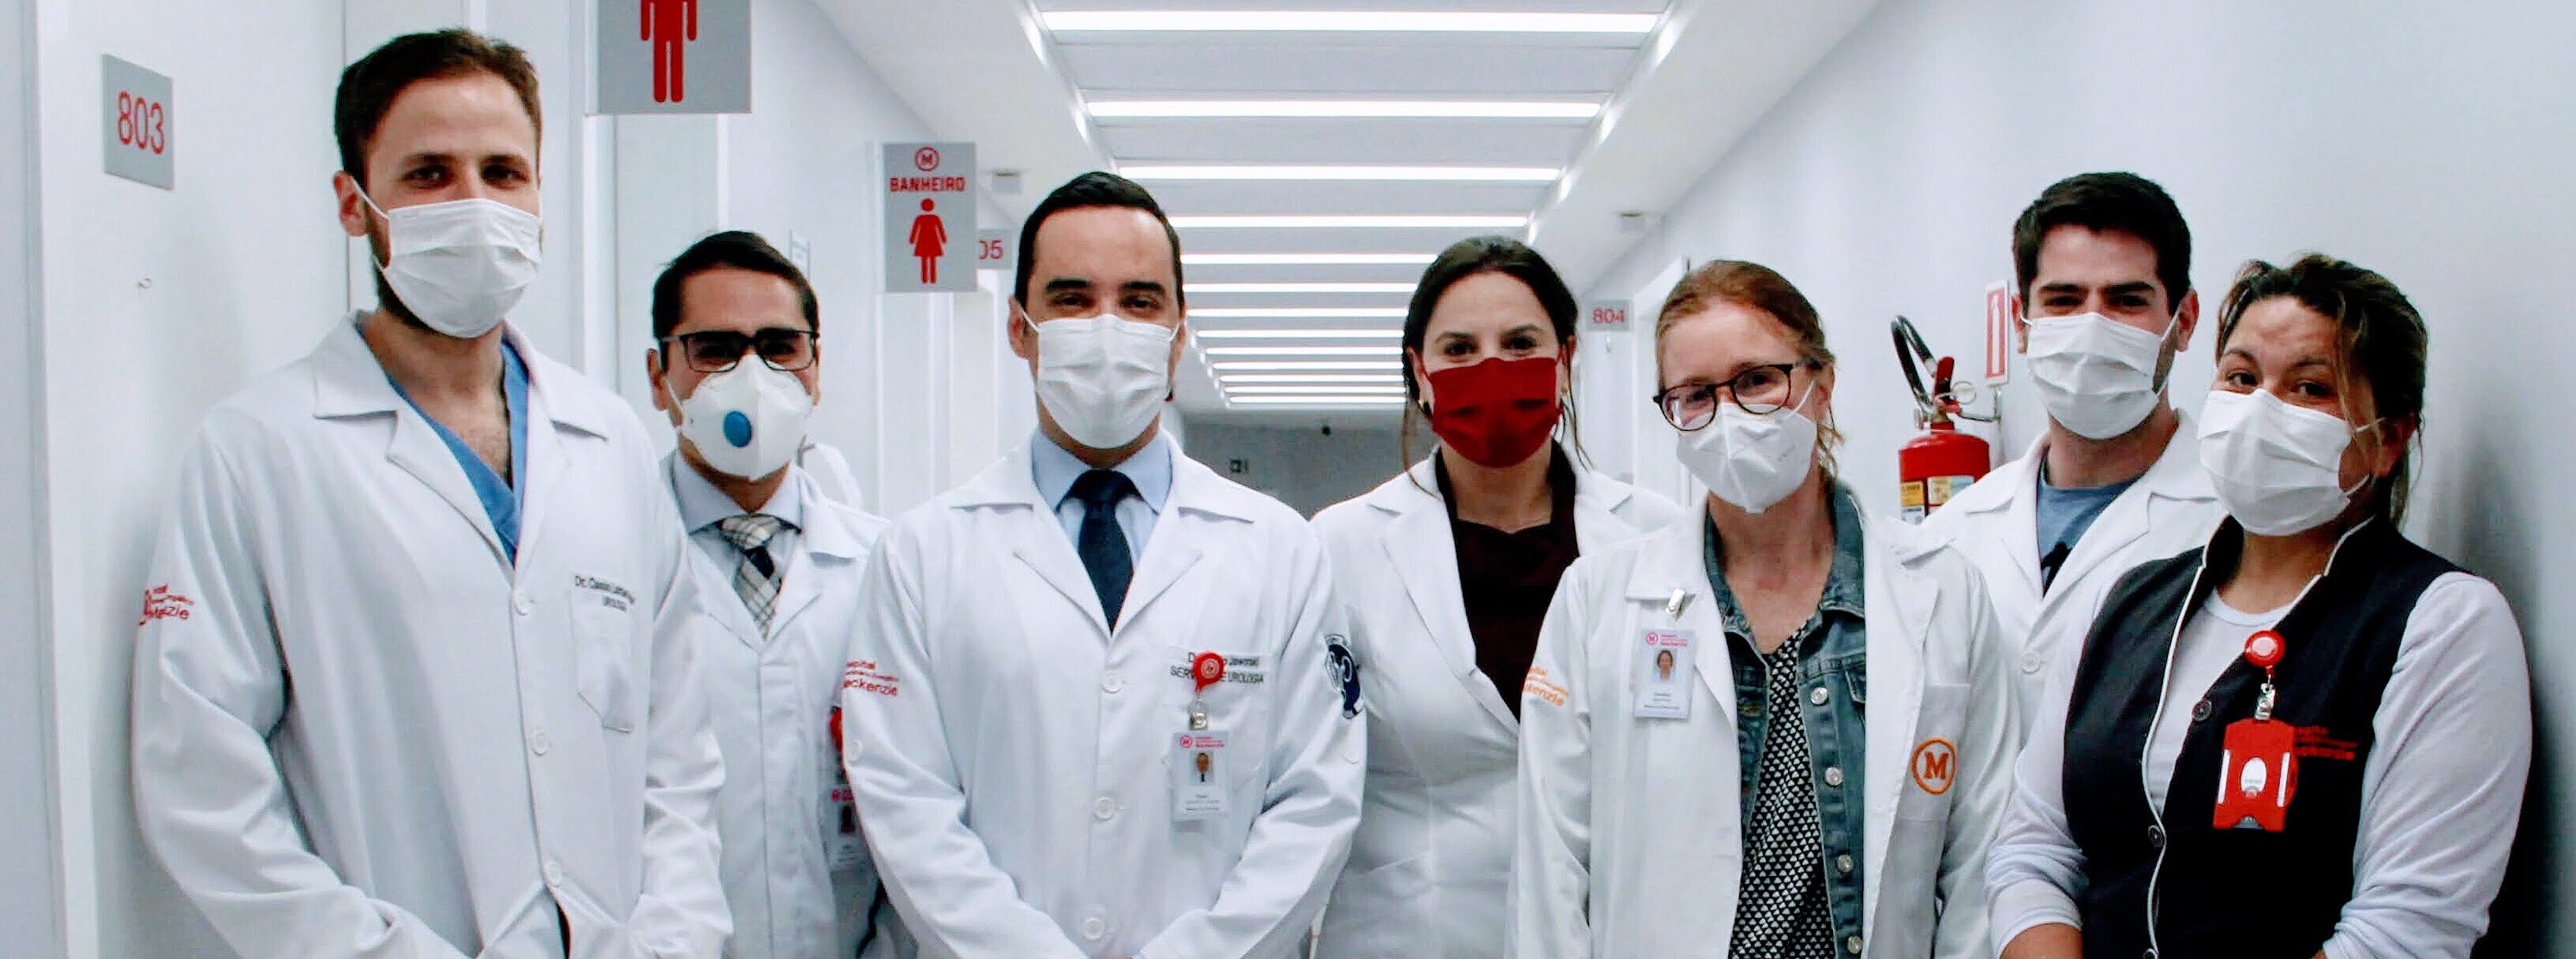 Na imagem, sete pessoas entre homens e mulheres, posam para foto num corredor claro de hospital. As pessoas vestem jalecos e uniformes com símbolo do Mackenzie e estão usando máscaras